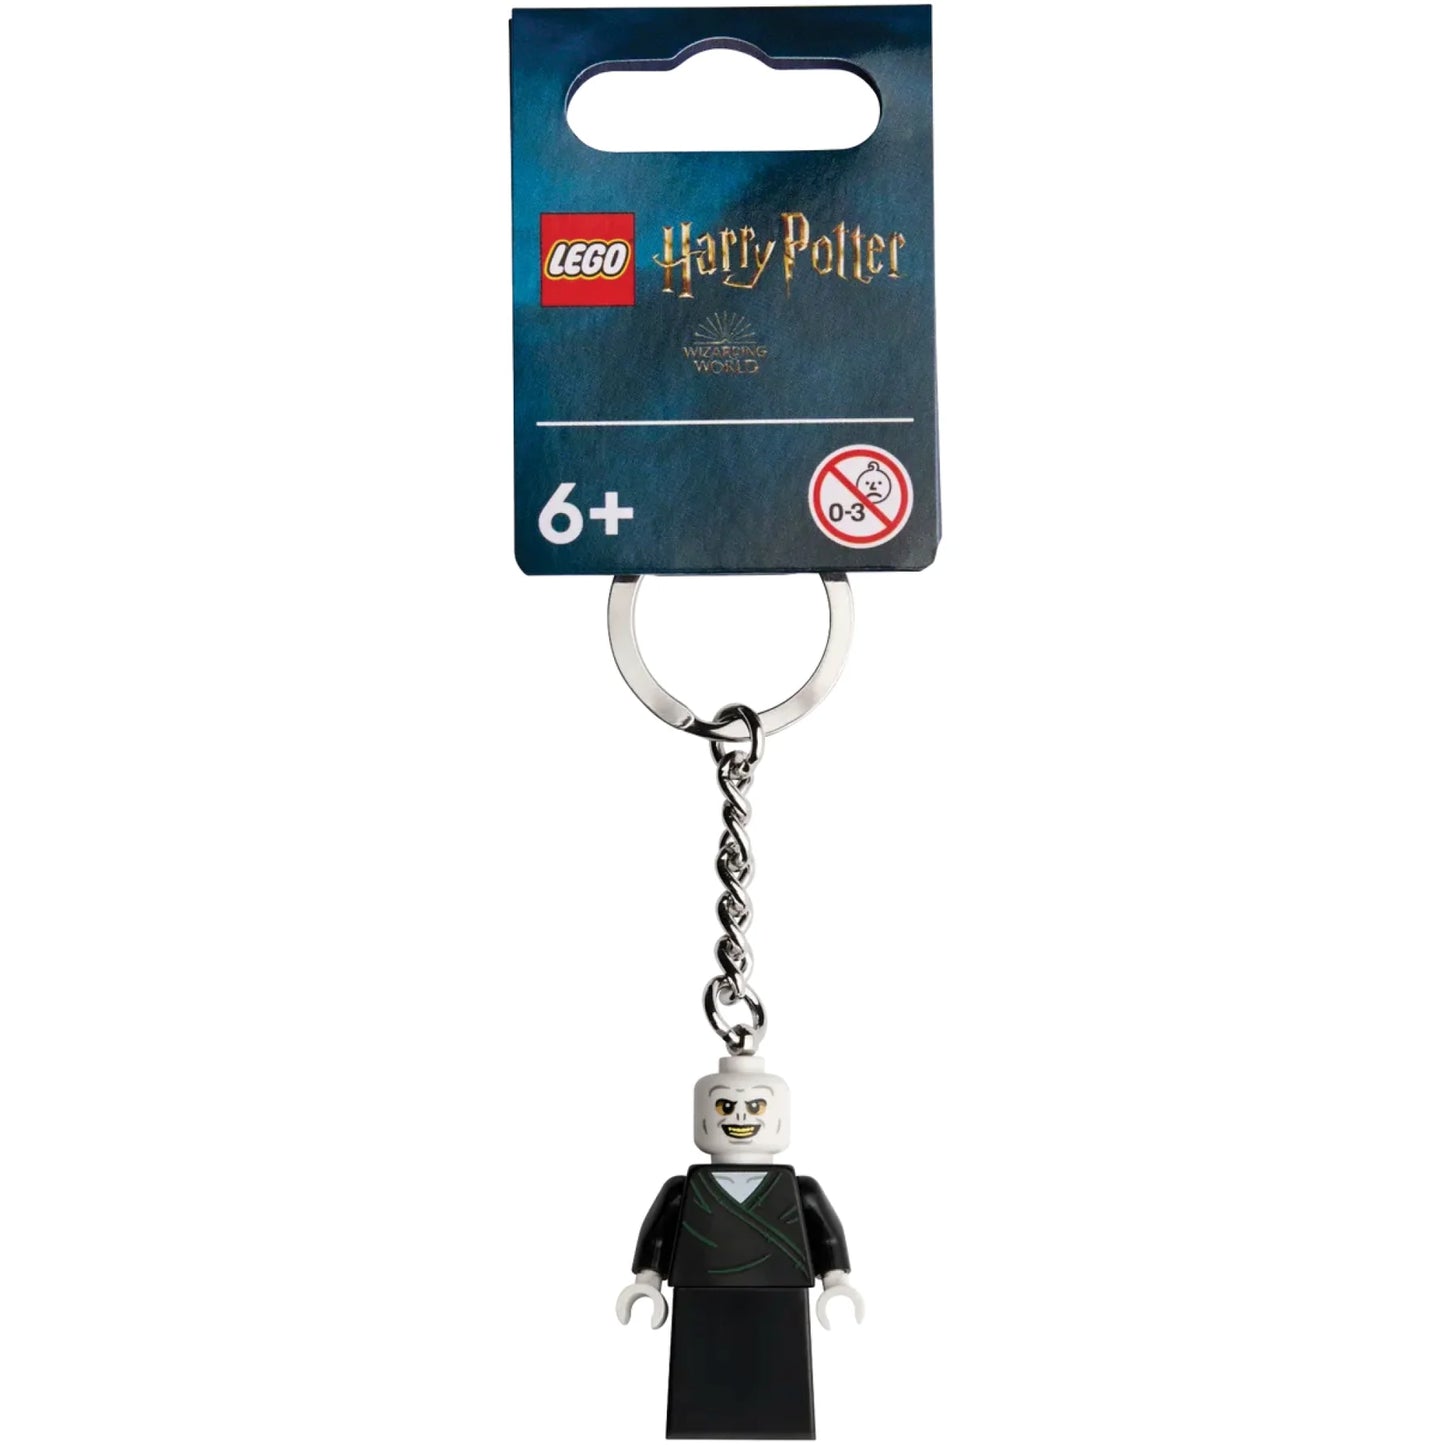 Lego Harry Potter™ Voldermort Keyring 854155